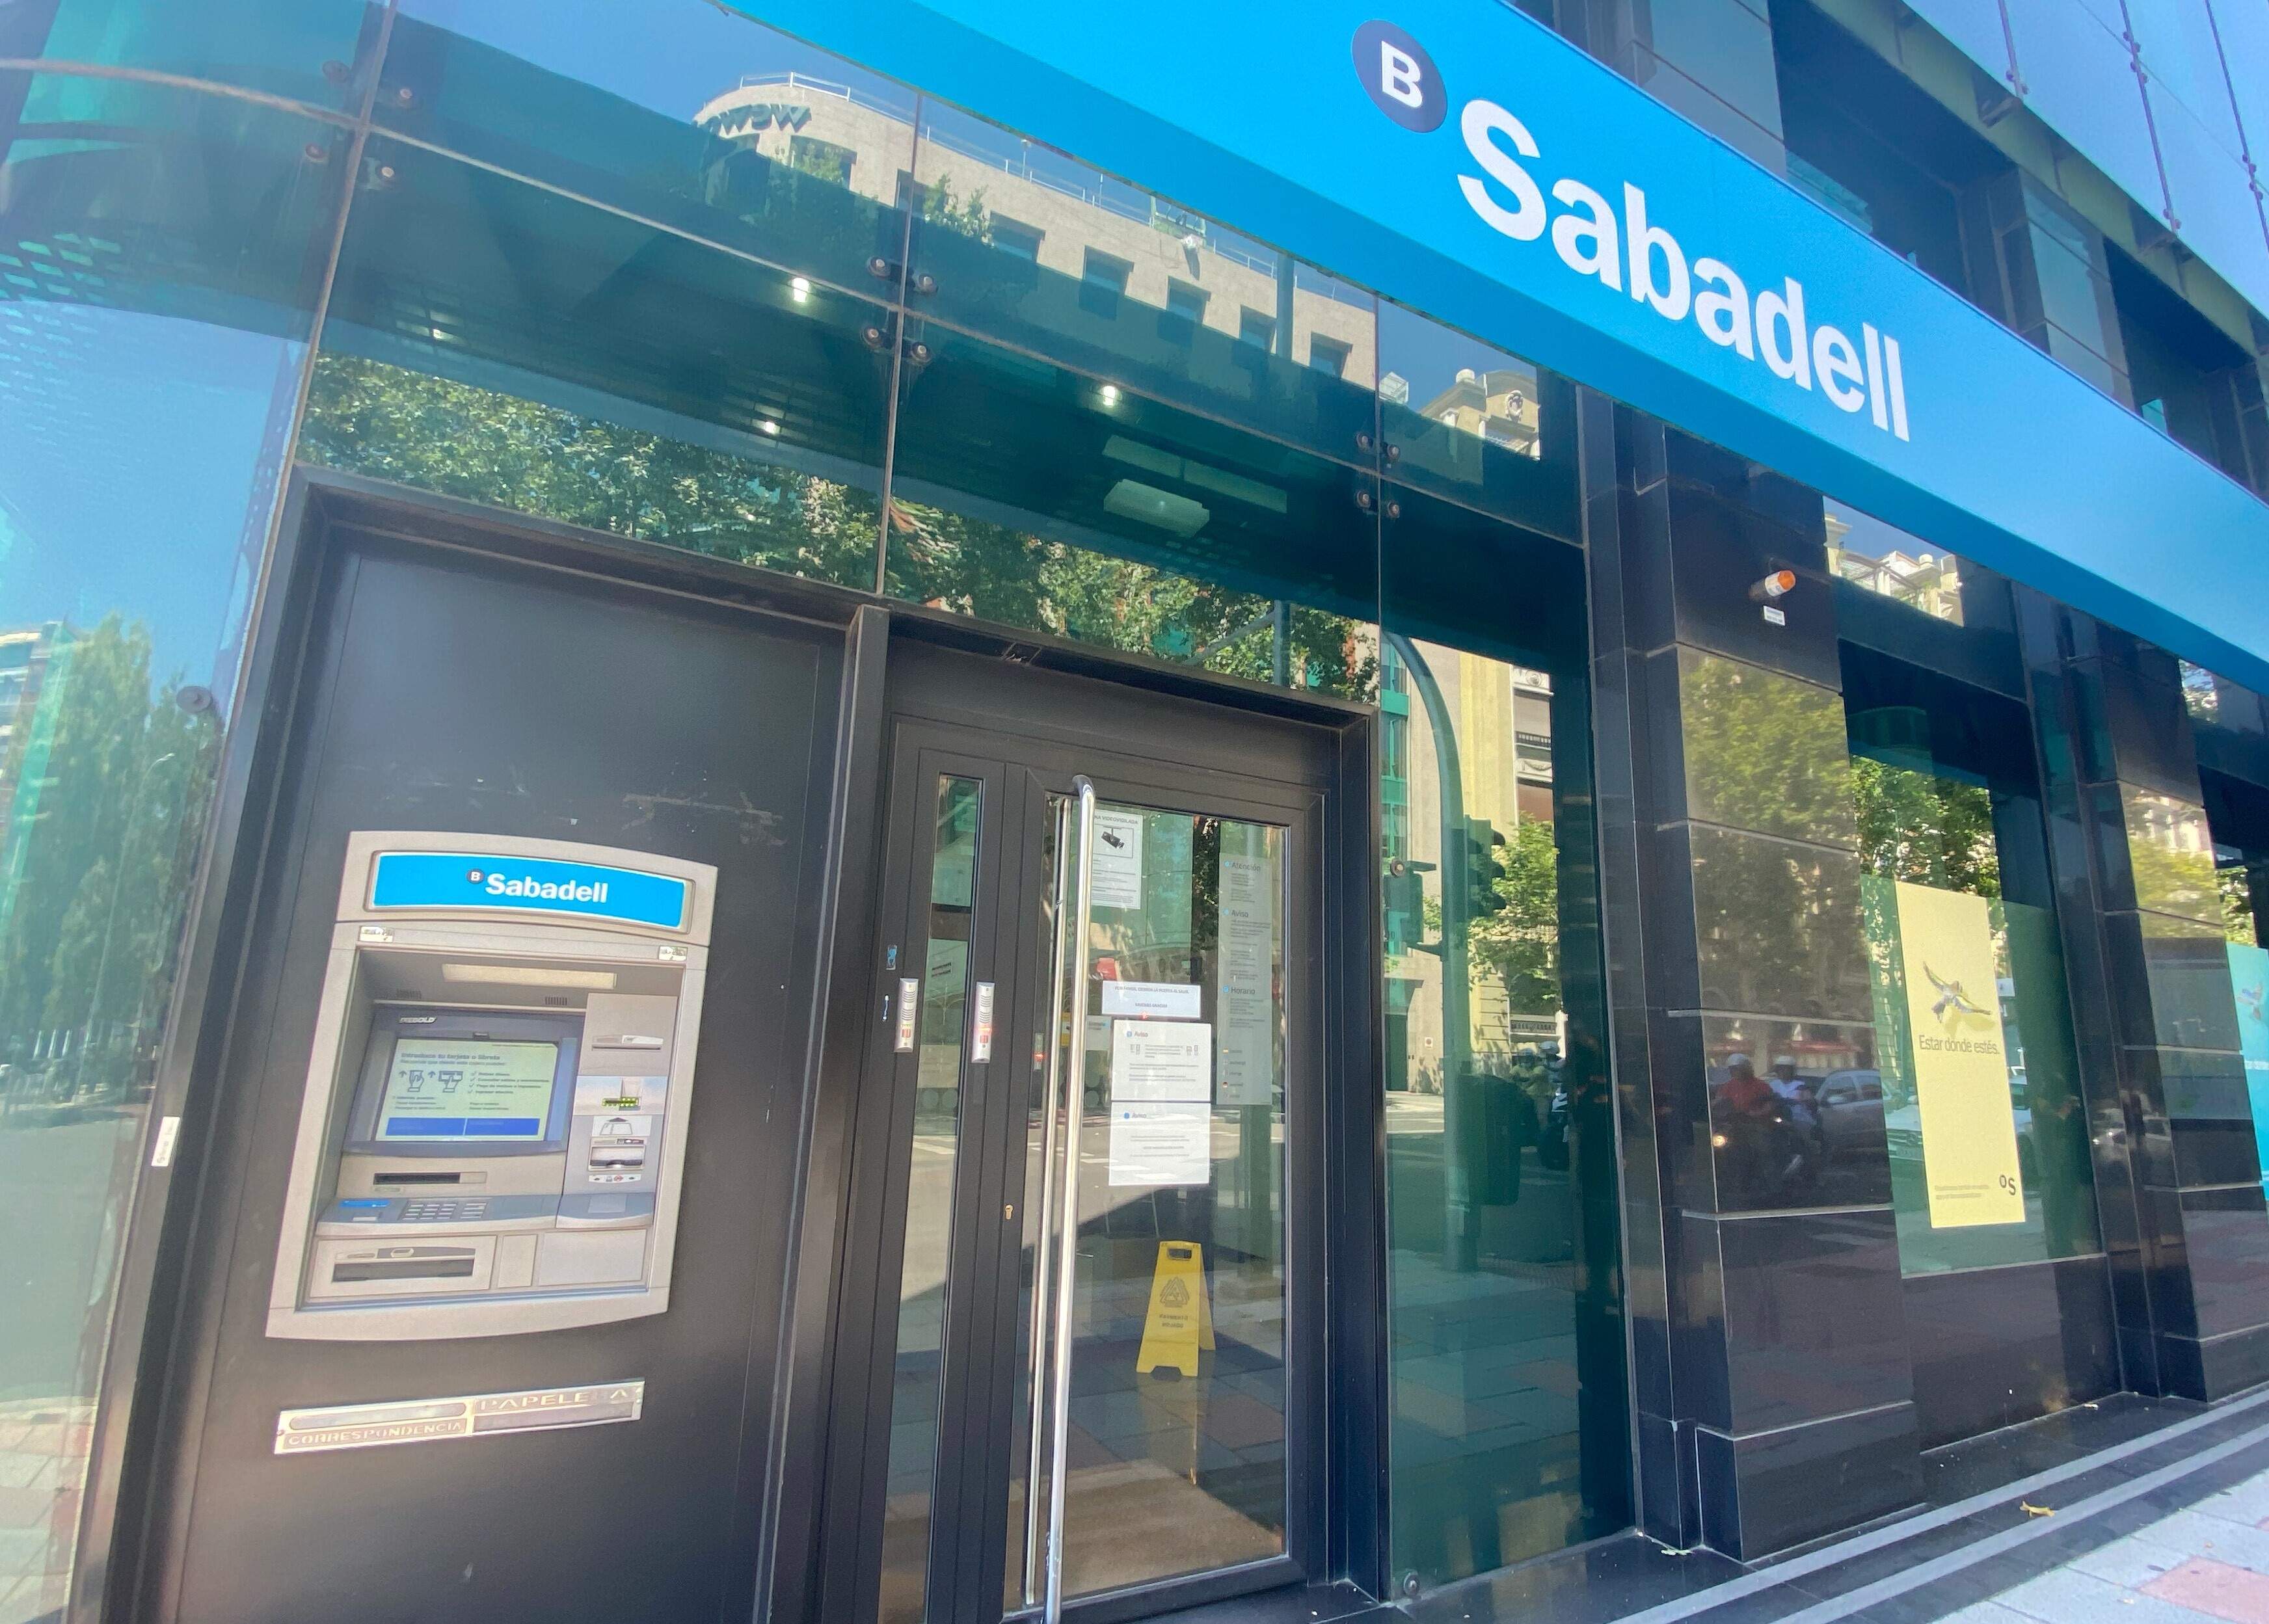 El Sabadell duplica la rentabilidad de su cuenta en plena opa y paga hasta 1.250 euros